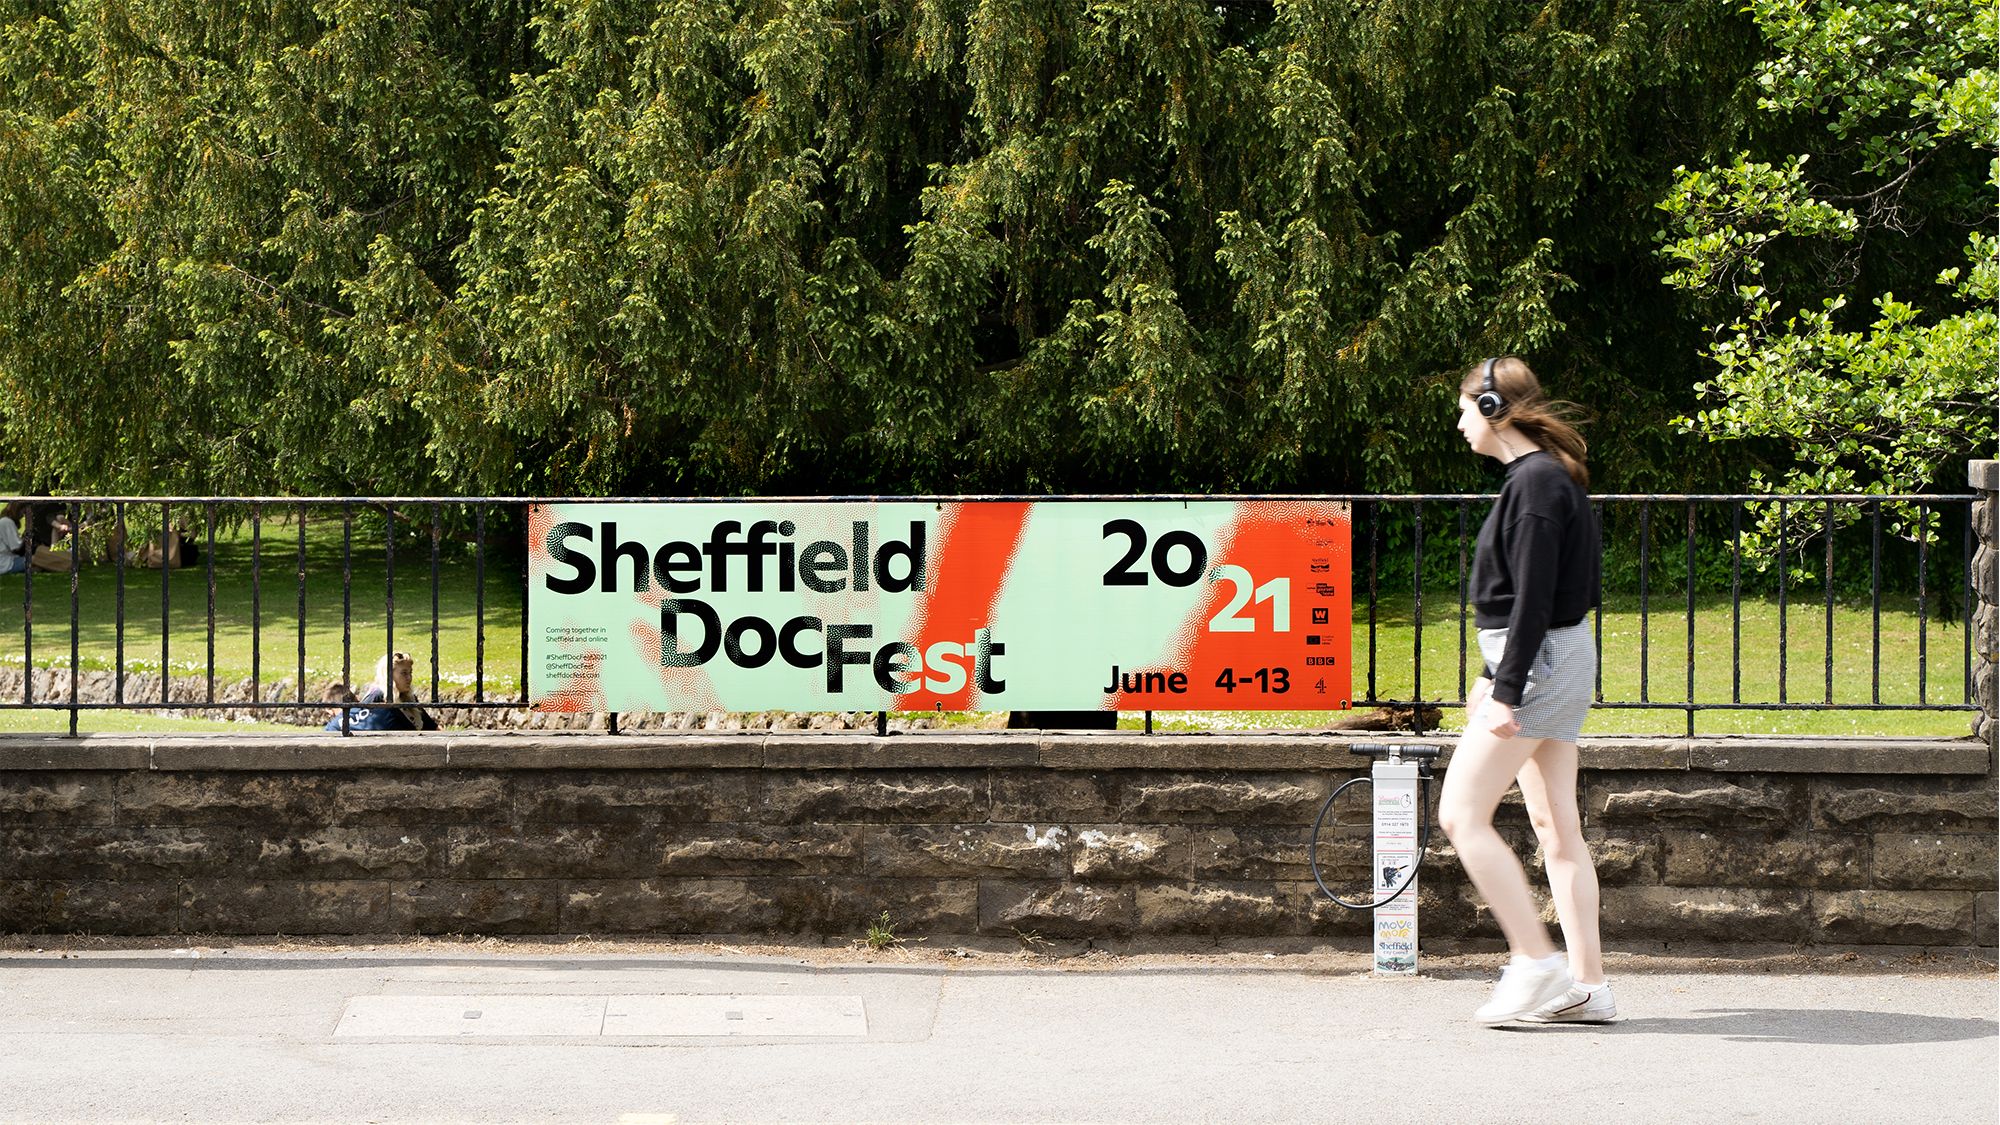 Sheffield DocFest 21